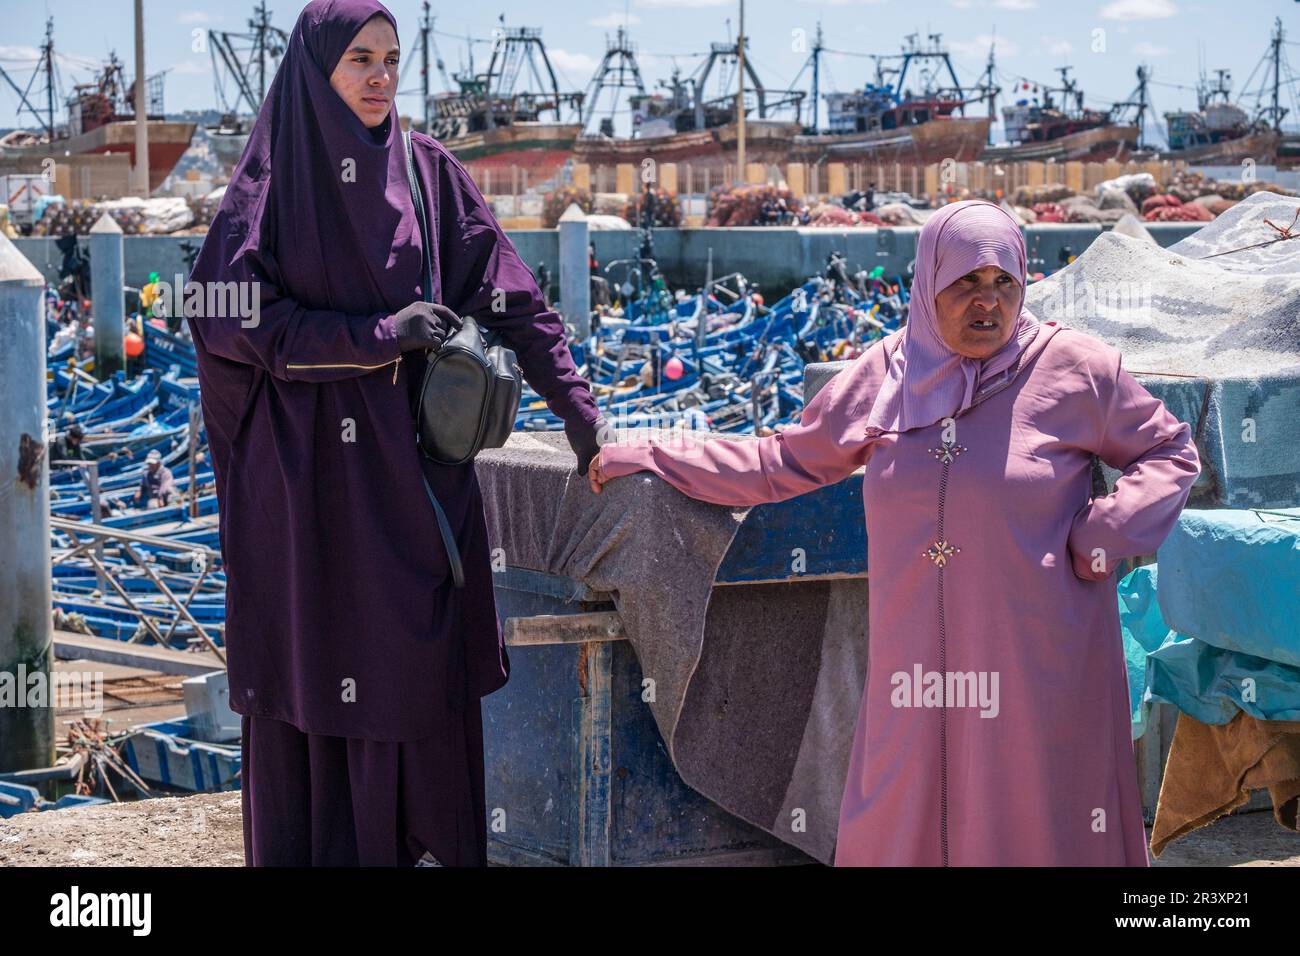 Deux femmes arabes attendant l'arrivée des bateaux de pêche, port de pêche, Essaouira, maroc, afrique. Banque D'Images